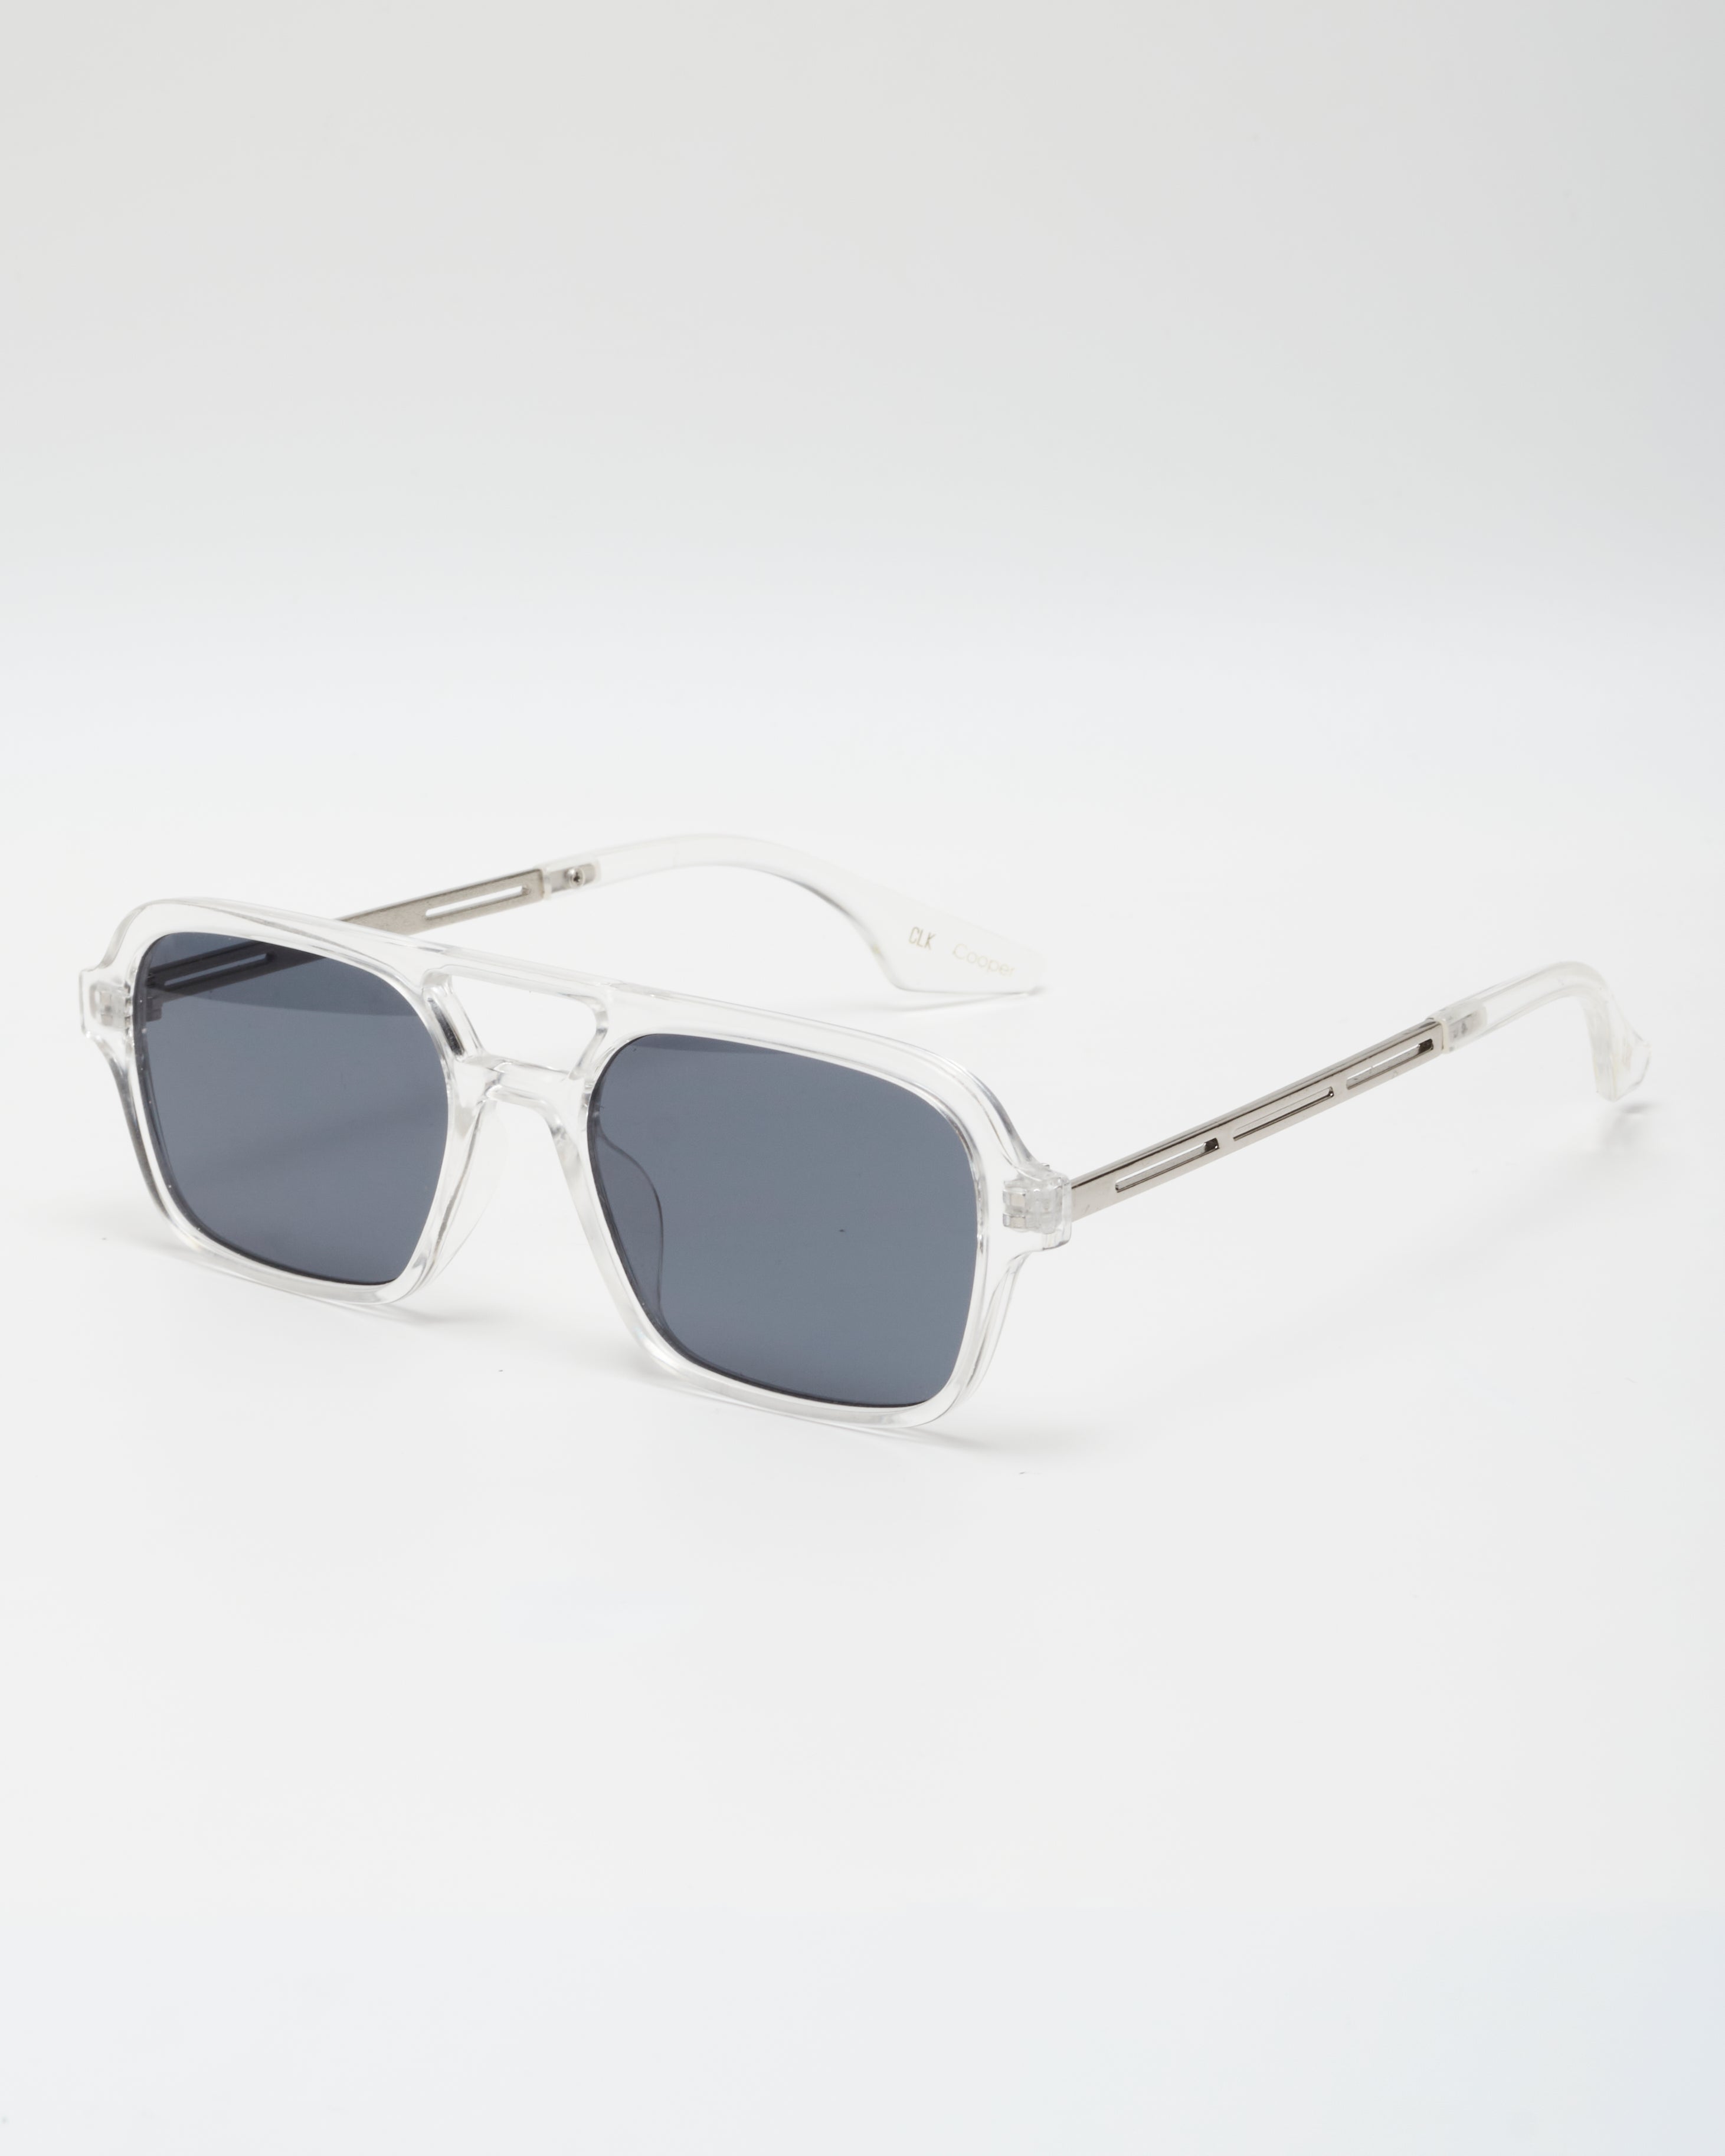 Lentes de sol/gafas-Aviador/clasicas-marco negro-Proteccion UV 400- hombre/mujer- CLARK-COOPER clarkshopcol